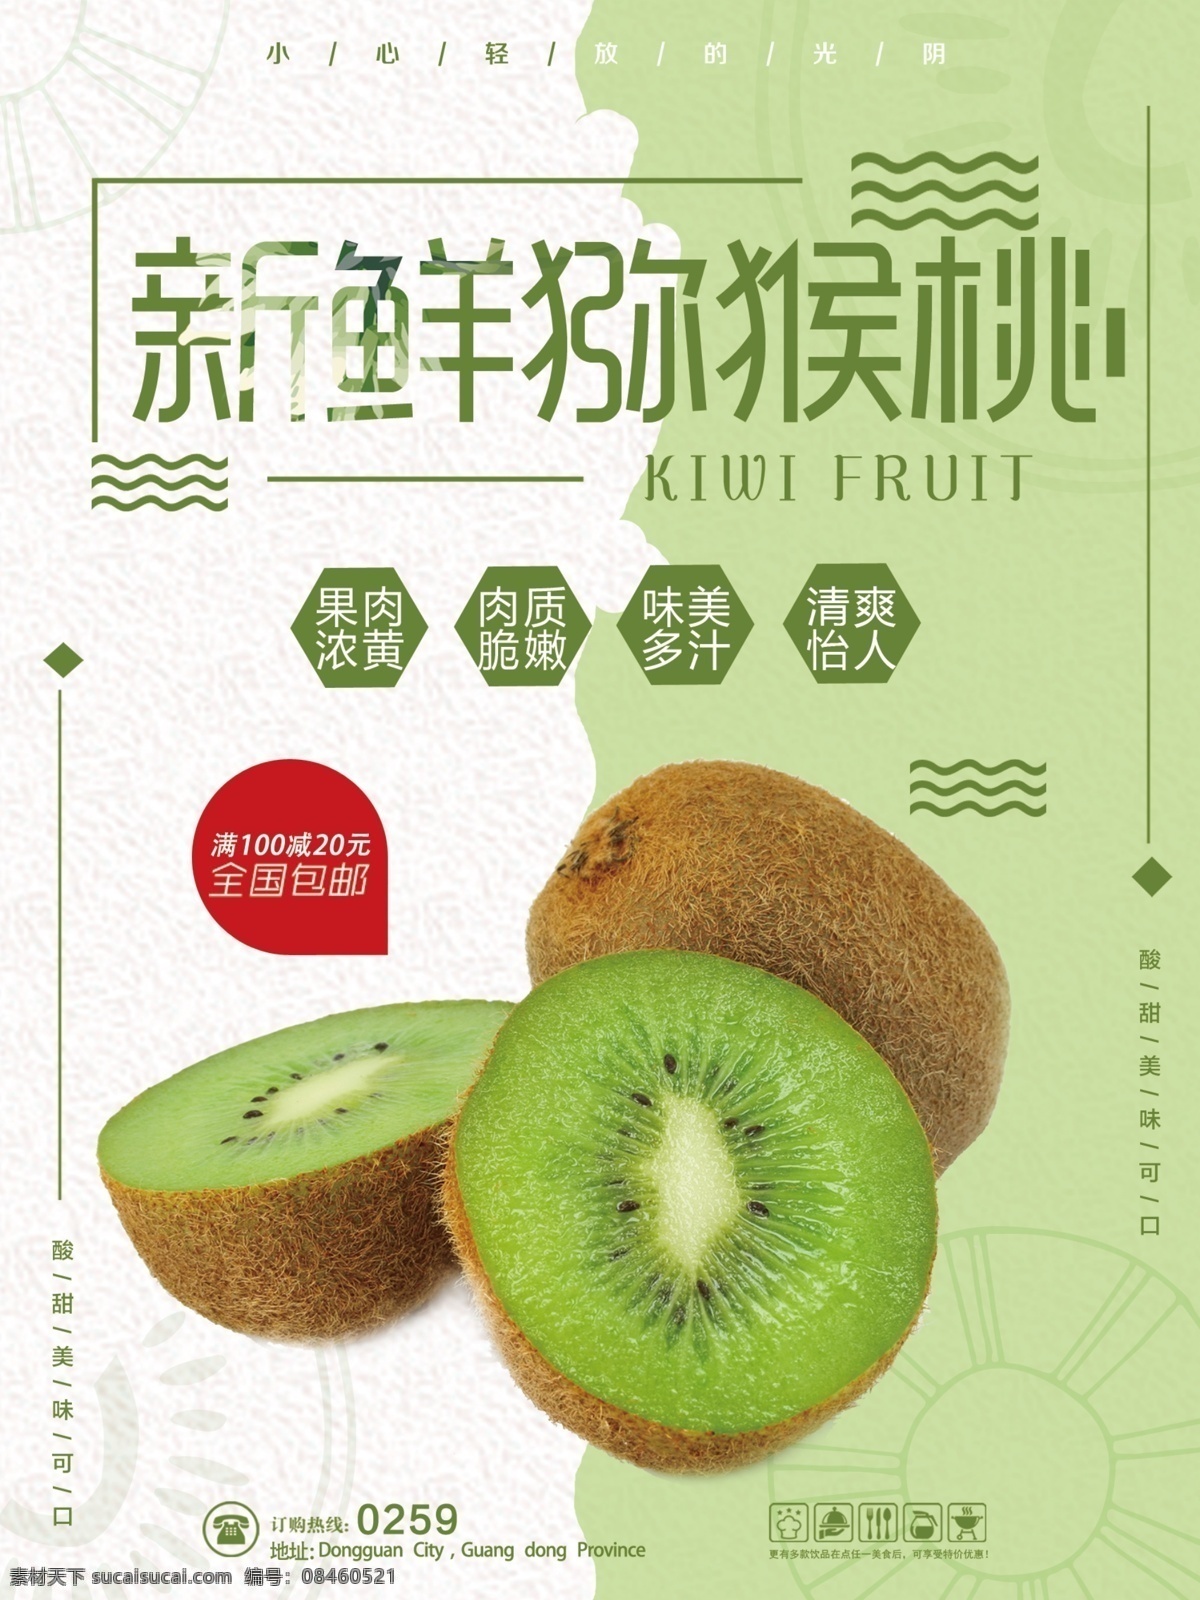 嫩绿色 简约 新鲜 猕猴桃 促销 海报 水果